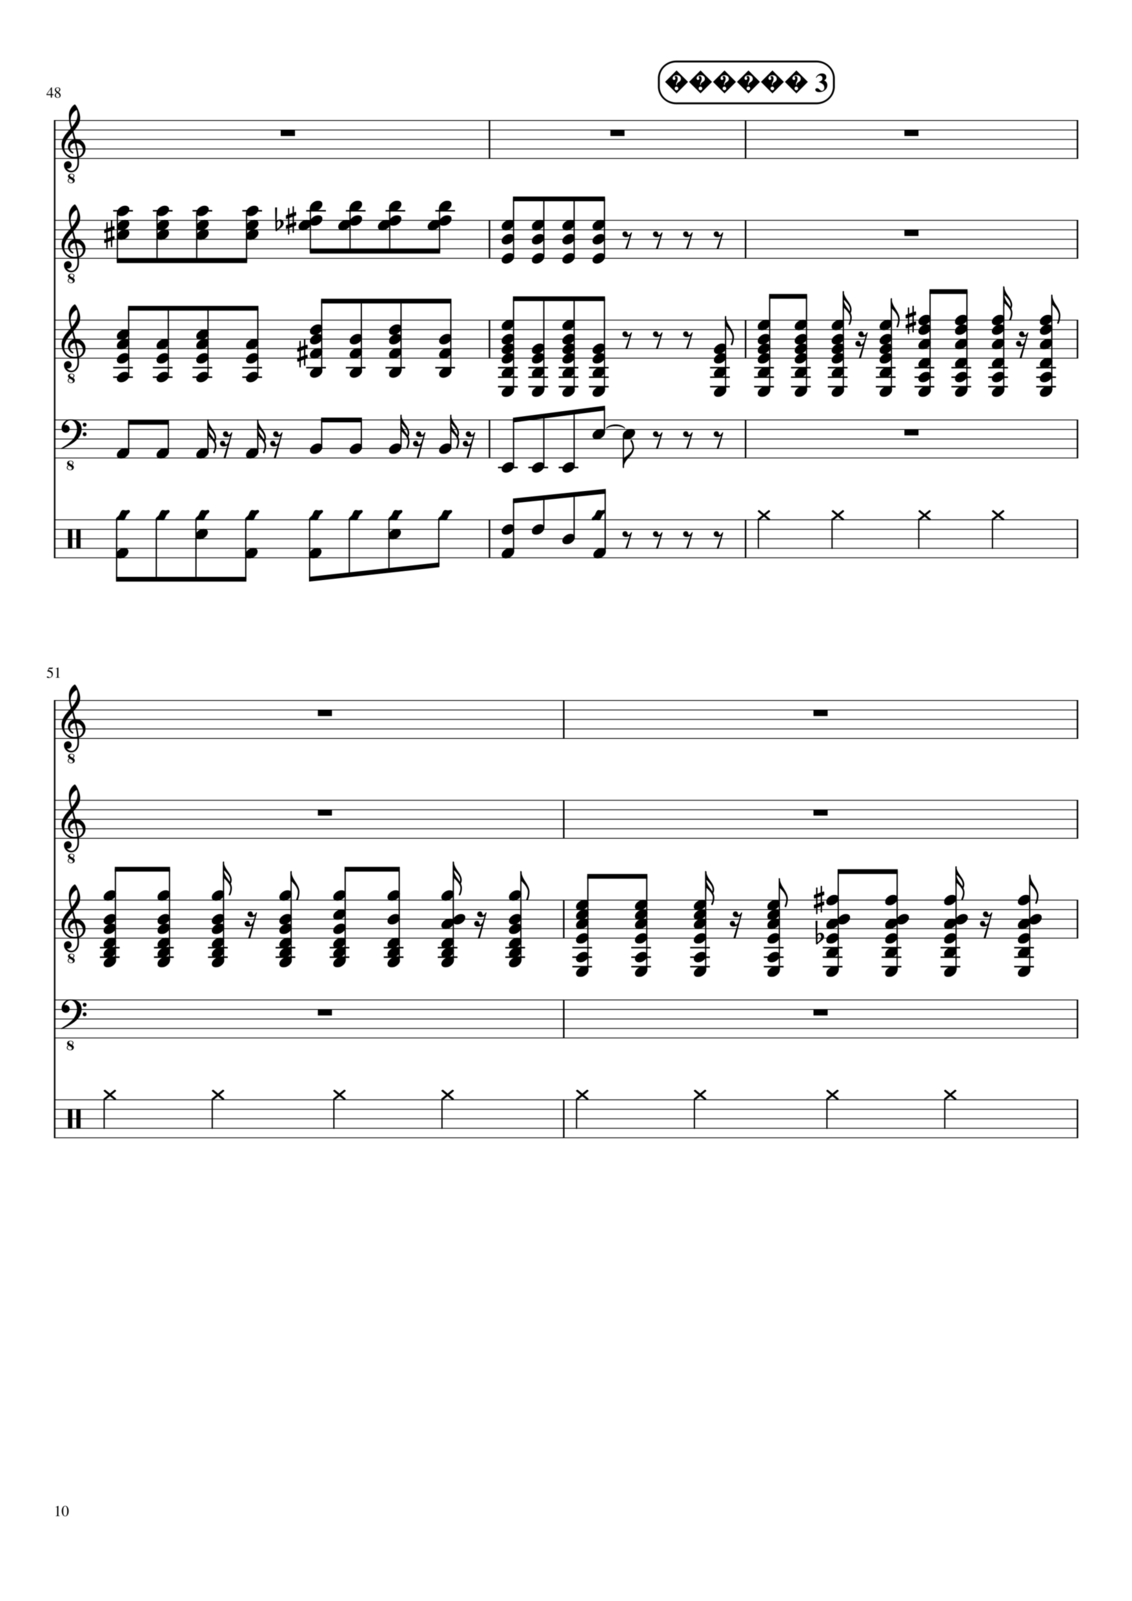 Vechnaya molodost slide, Image 10